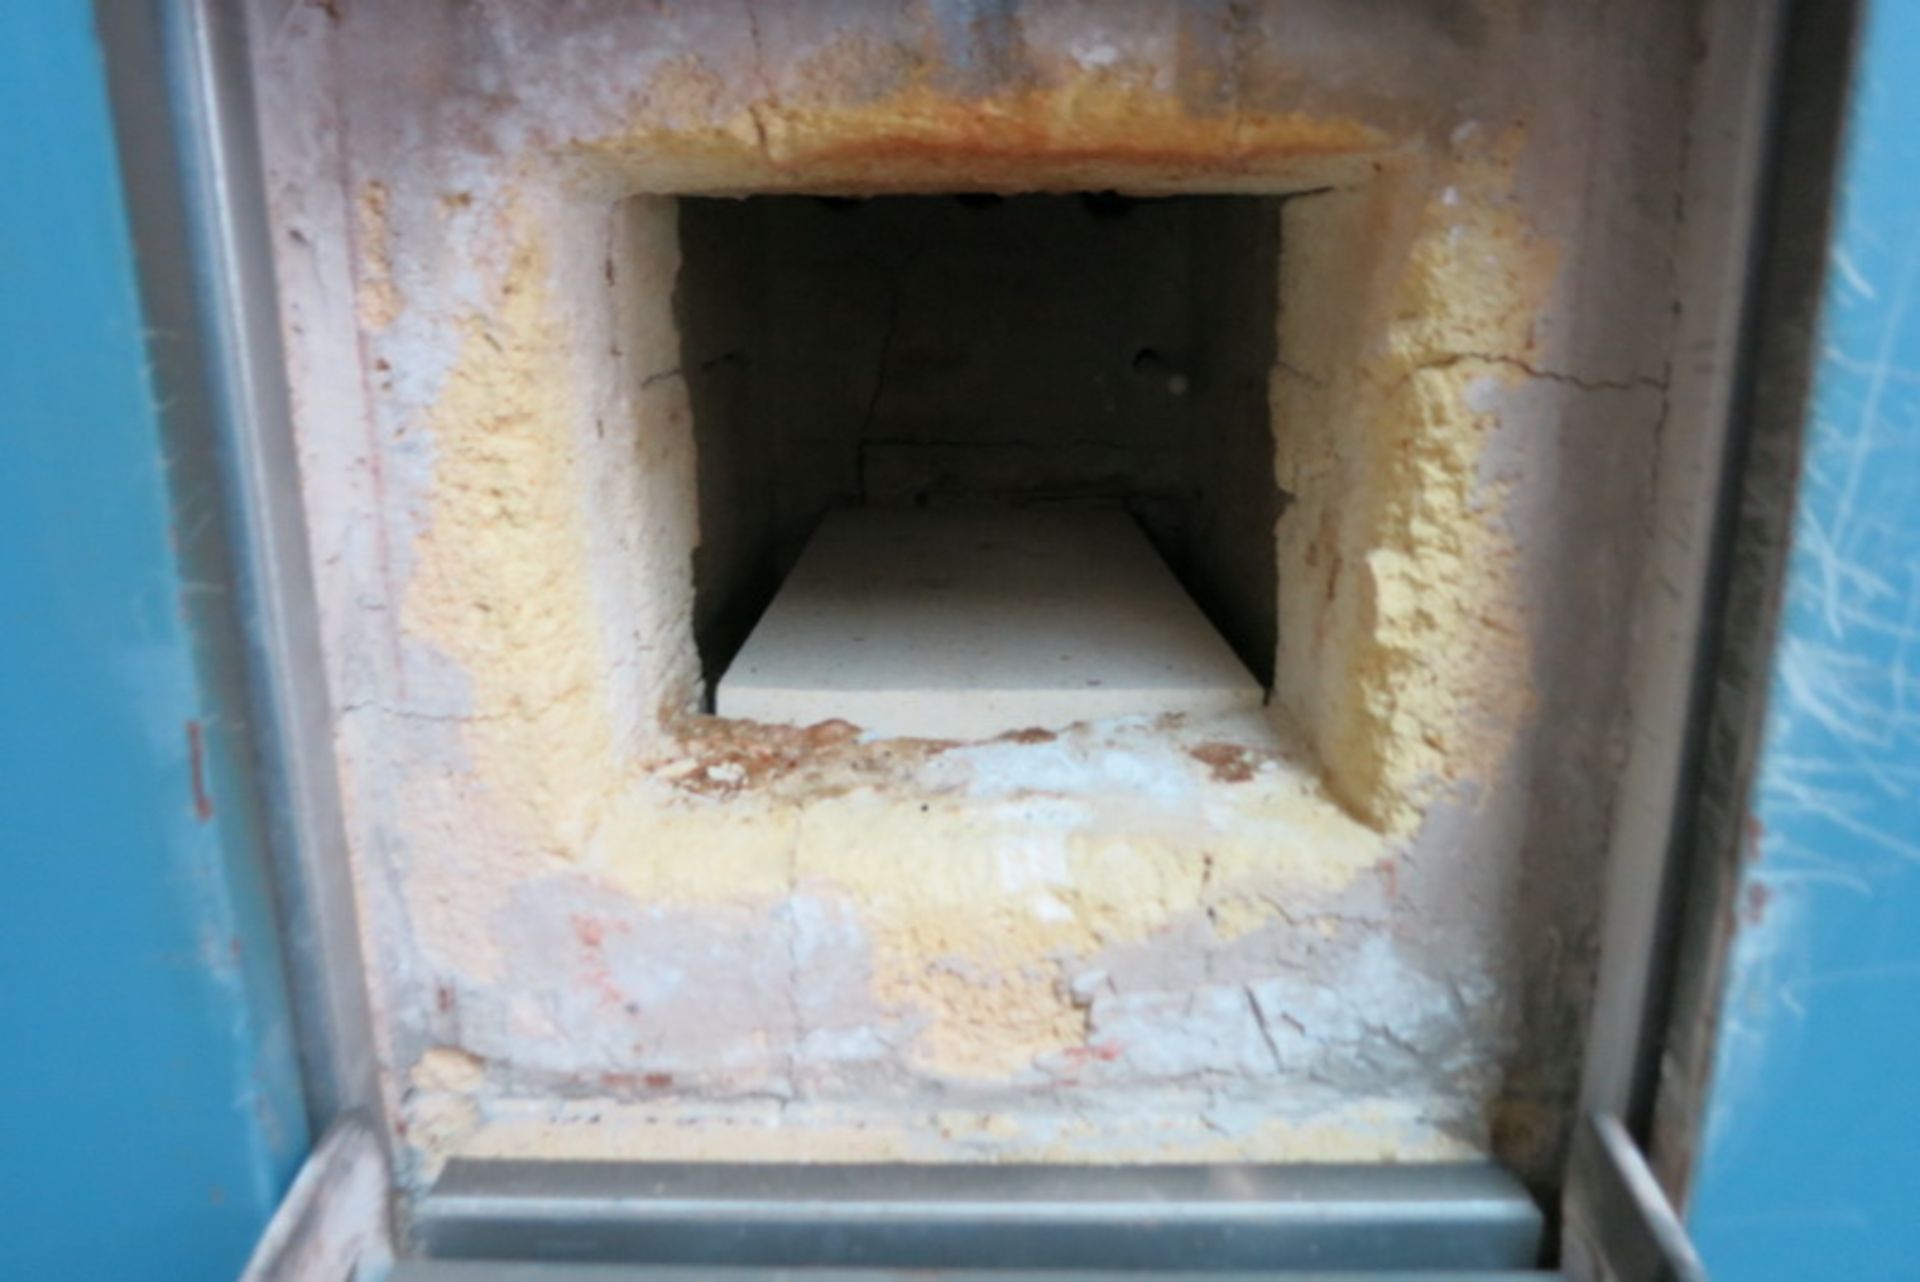 Lindberg lab furnace, model 51333, s/n 741096 - Image 2 of 2